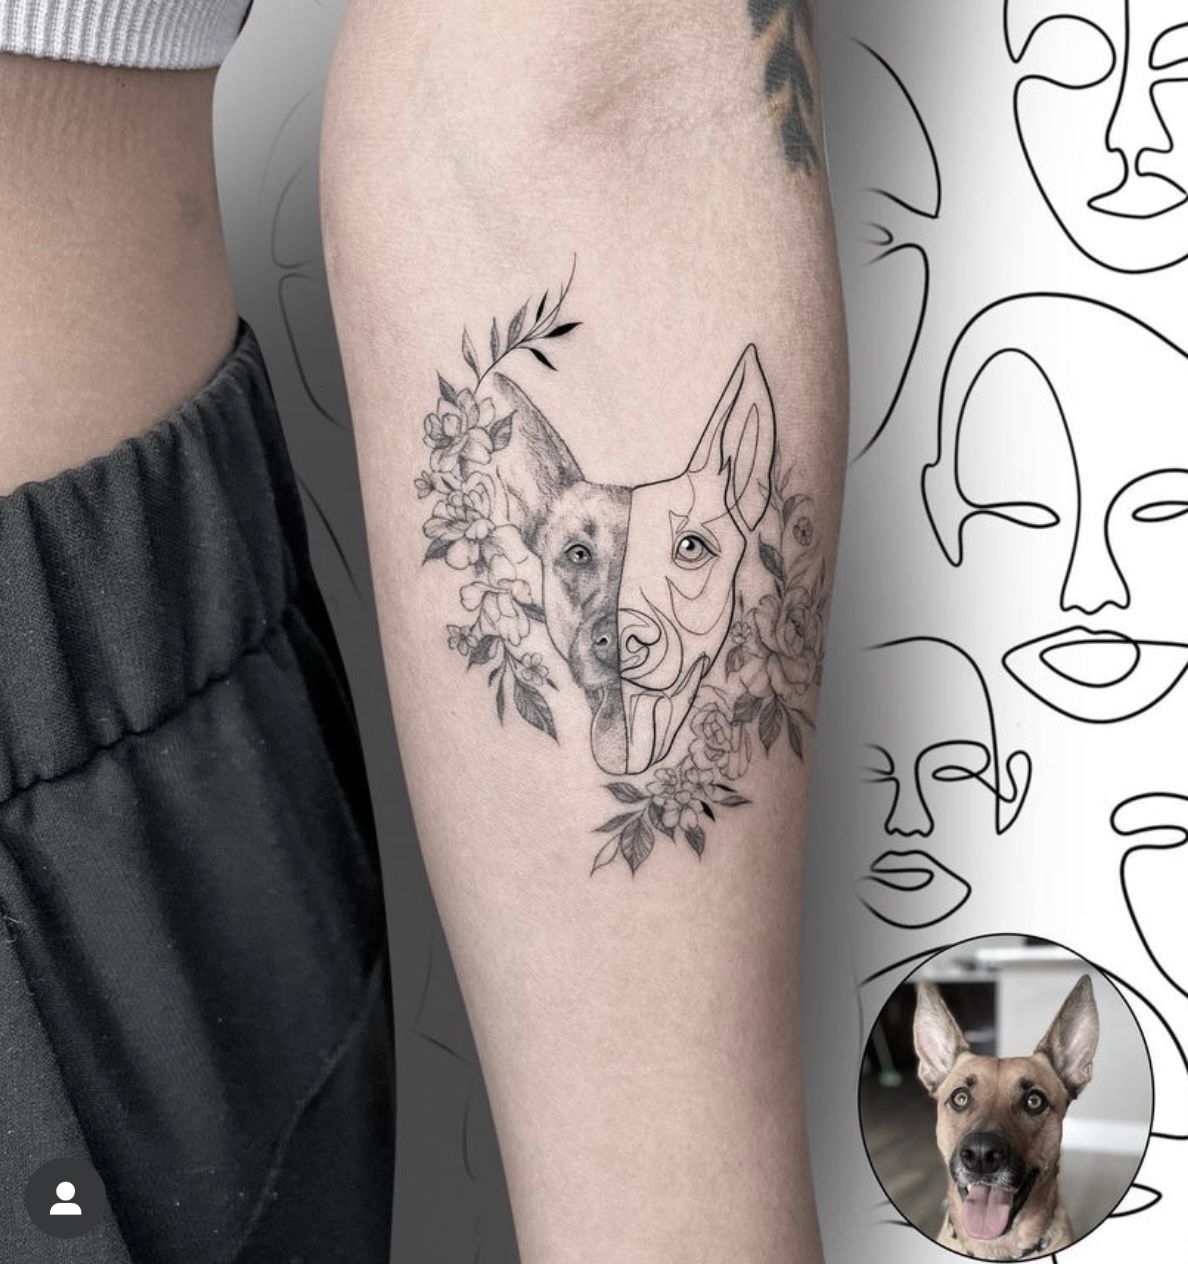 Meet Jordan Lentz | Tattoo Artist - SHOUTOUT SOCAL